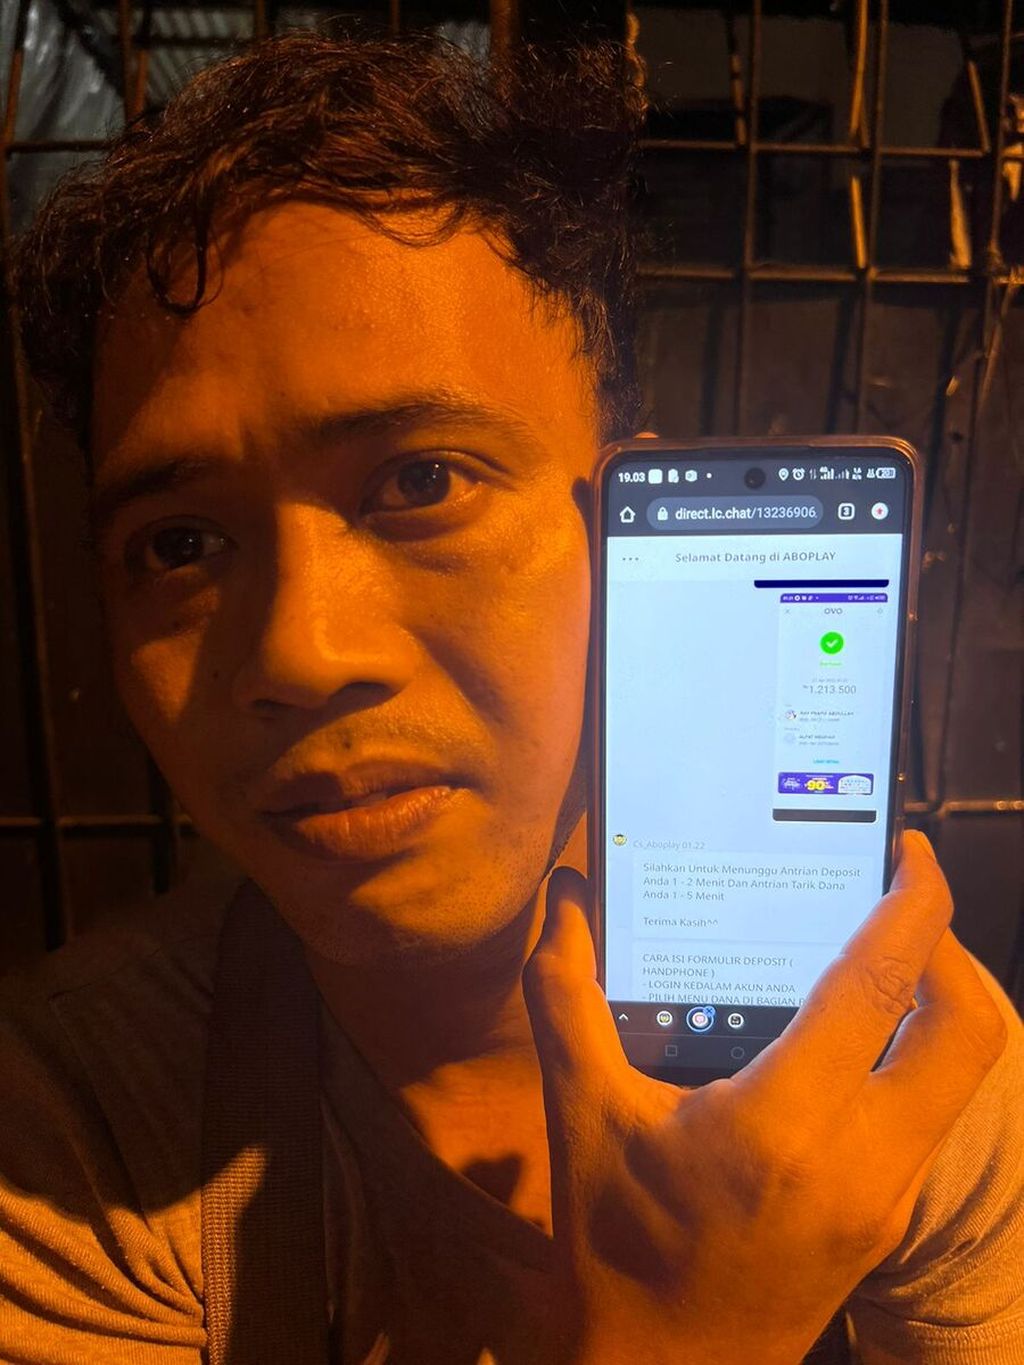 Ray Prama Abdullah (28), PPSU di Sawah Besar, Jakarta Pusat, mengklarifikasi laporan palsunya ke polisi, Kamis (28/4/2022). Sebelumnya, ia mengaku menjadi korban pencurian yang membuat uang THR-nya senilai Rp 4,4 juta ludes. Ia membuat laporan itu karena kalah judi dan takut dimarahi istri.